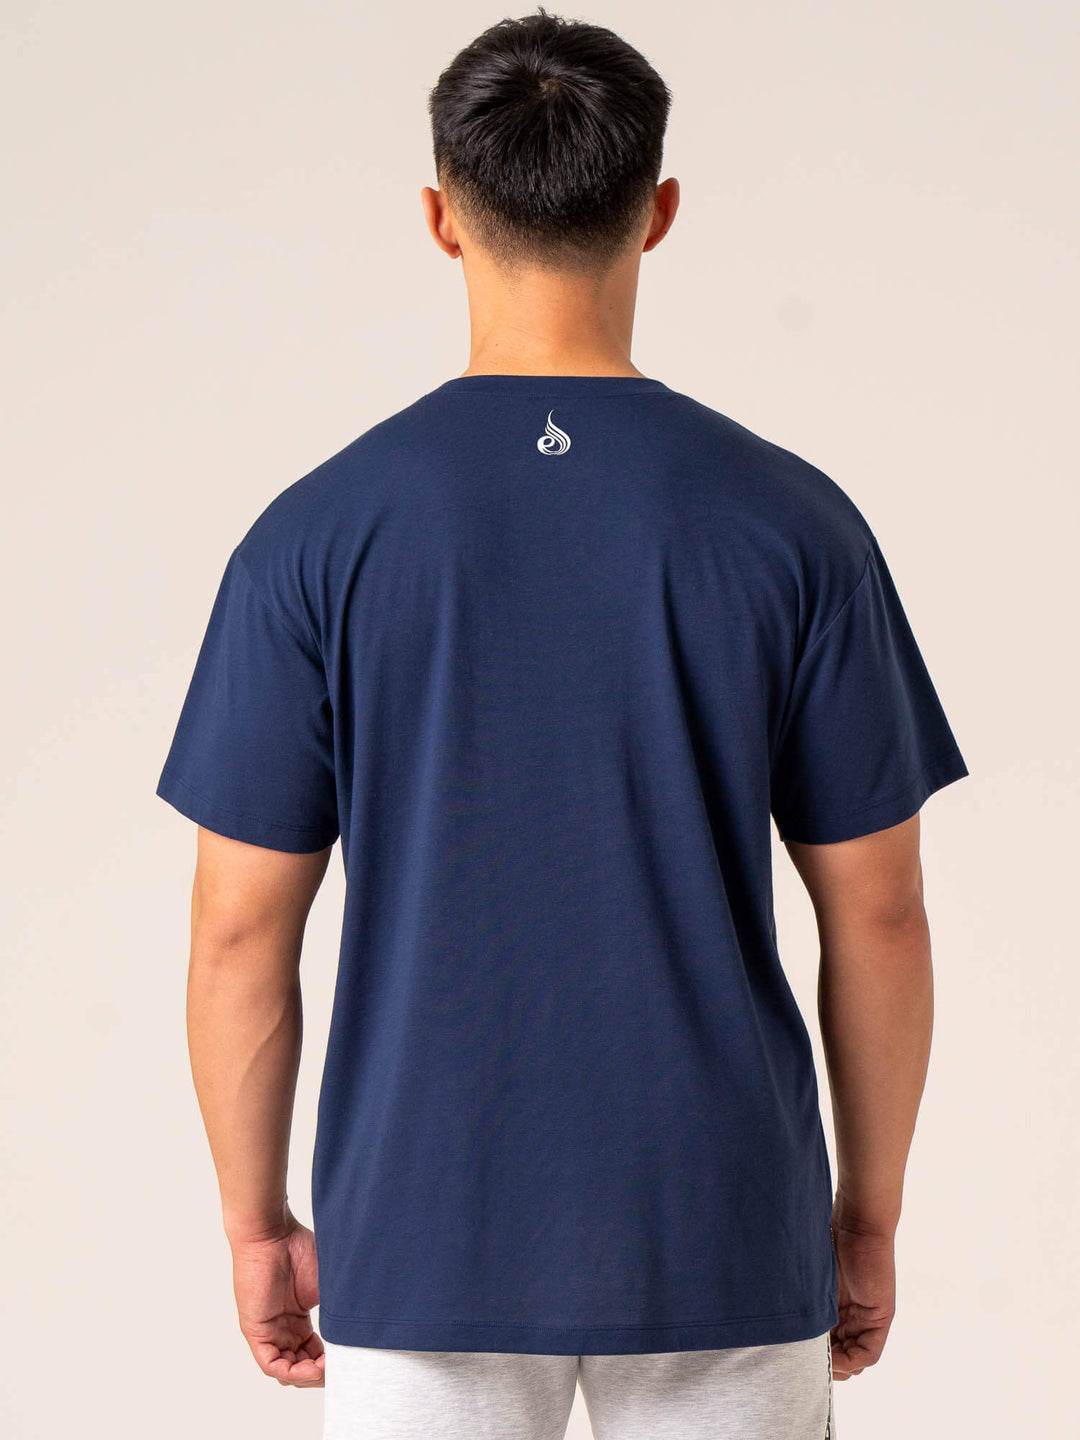 Emerge Oversized T-Shirt - Navy Clothing Ryderwear 